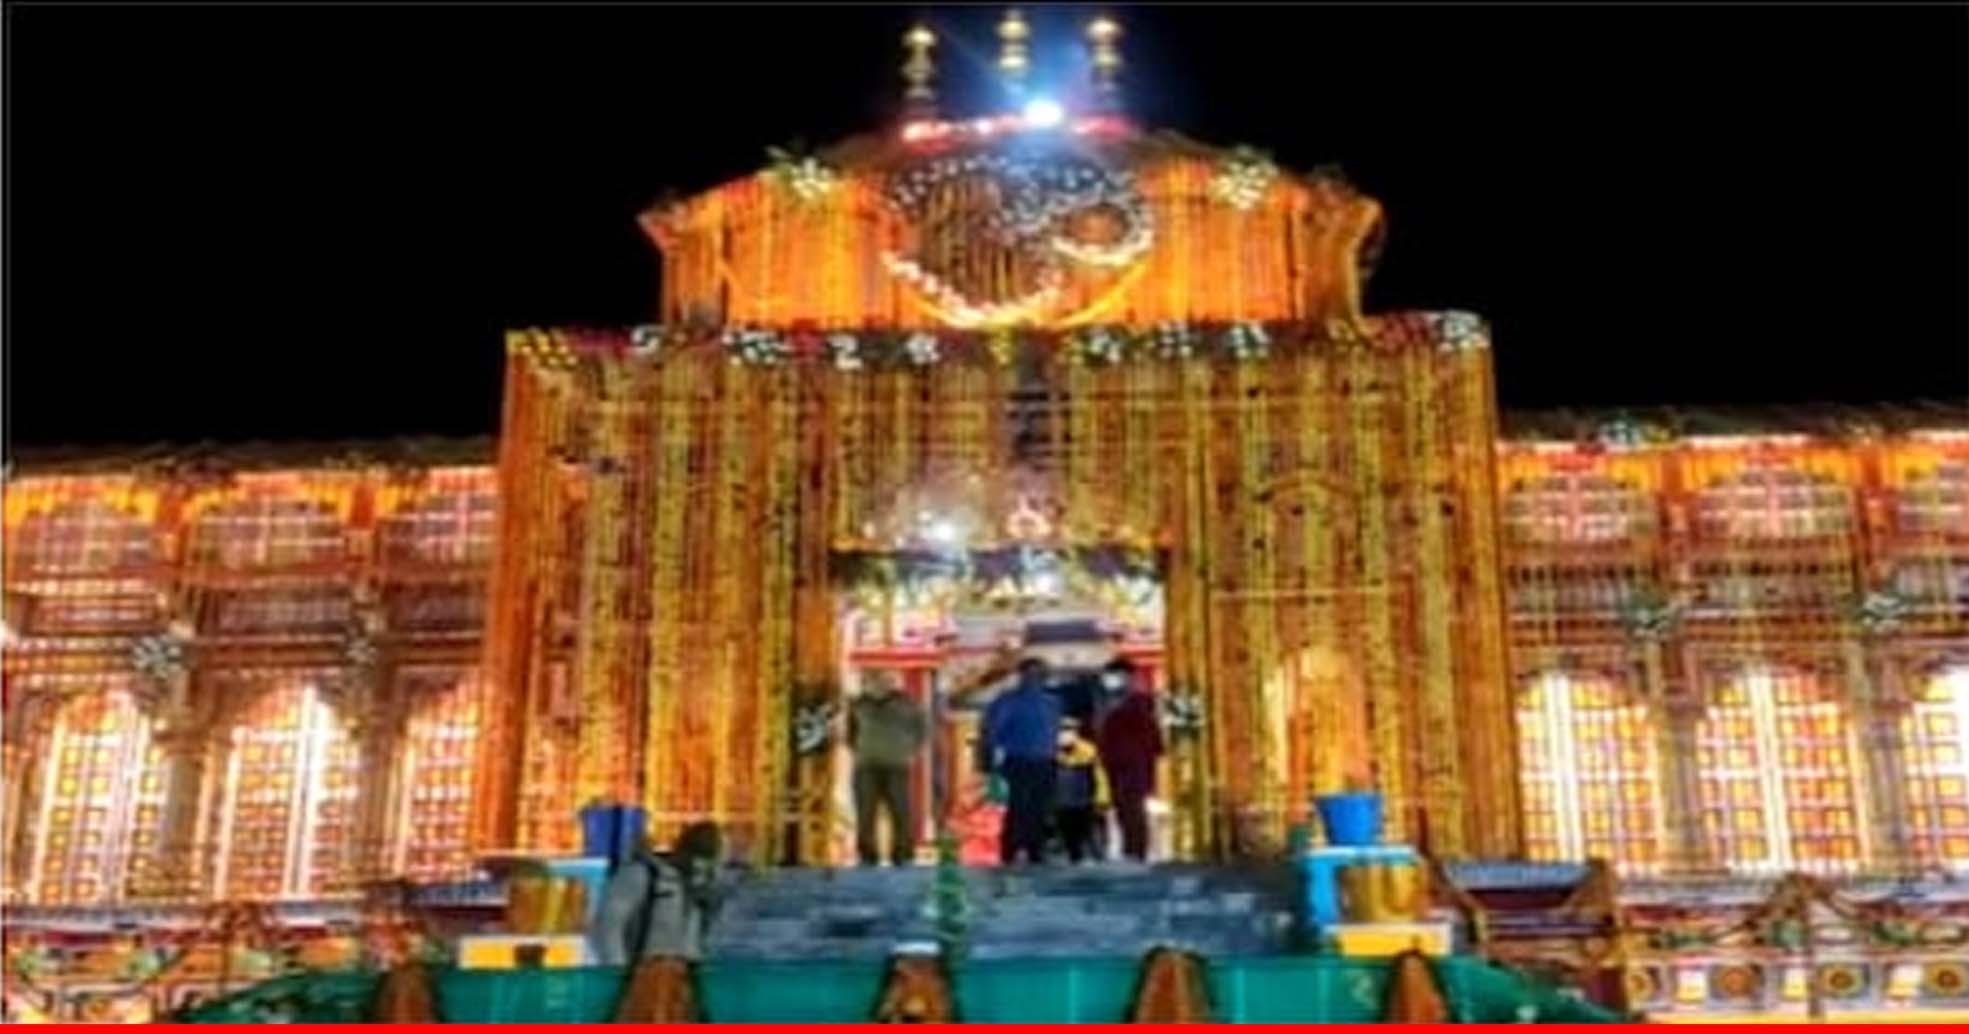 वैदिक परंपरा के साथ ब्रह्म मुहूर्त में खुले भगवान बद्री विशाल के कपाट